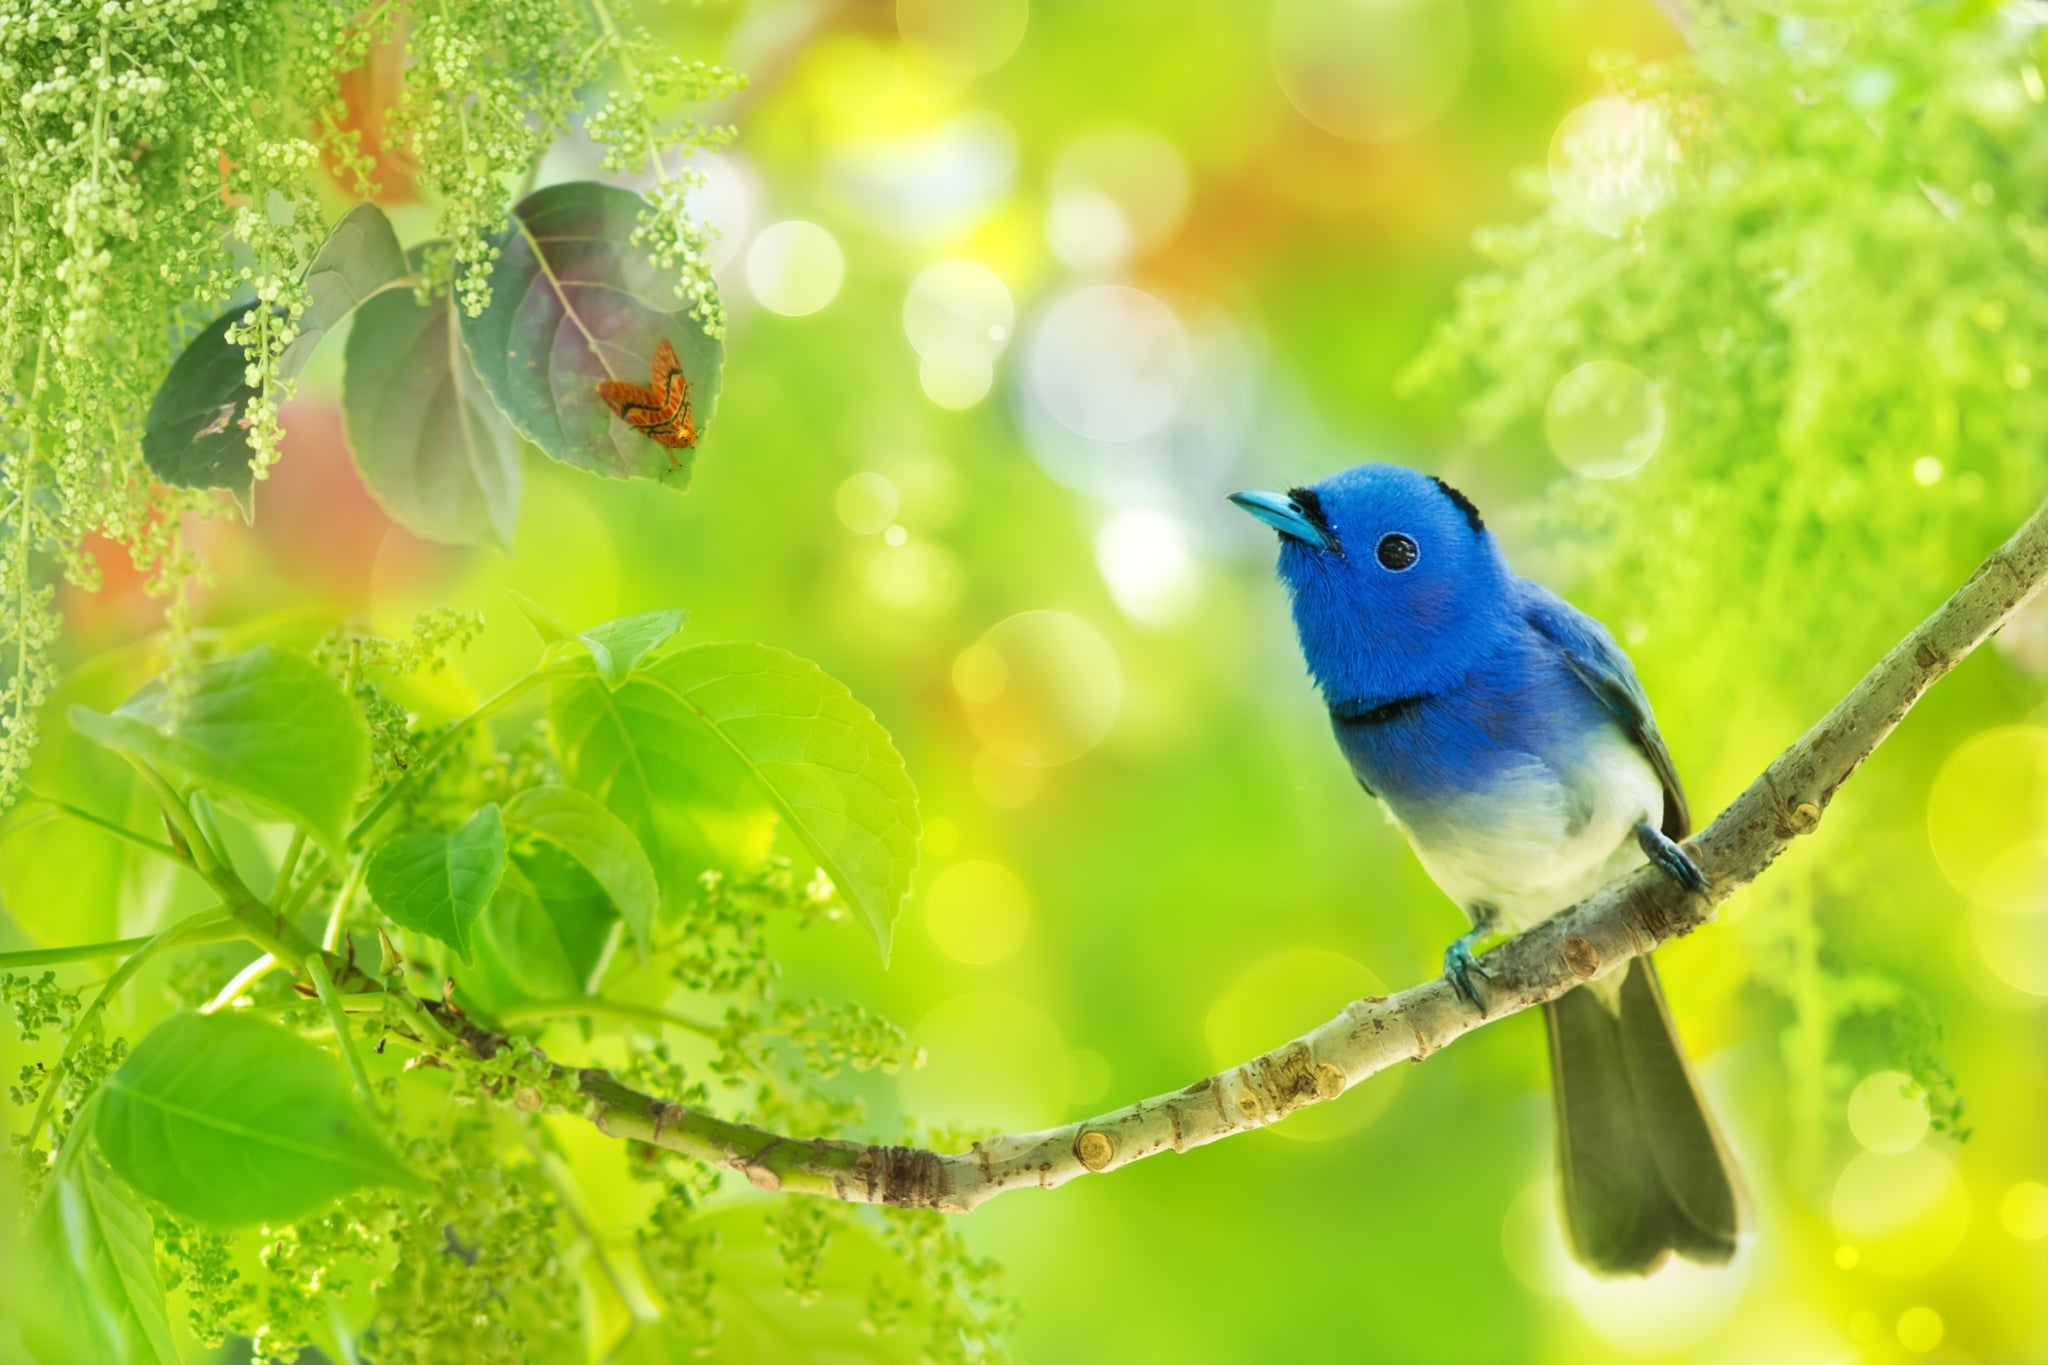 Скачать картинку Животные, Птицы, Птица, Зелень, Синий Монарх в телефон бесплатно.